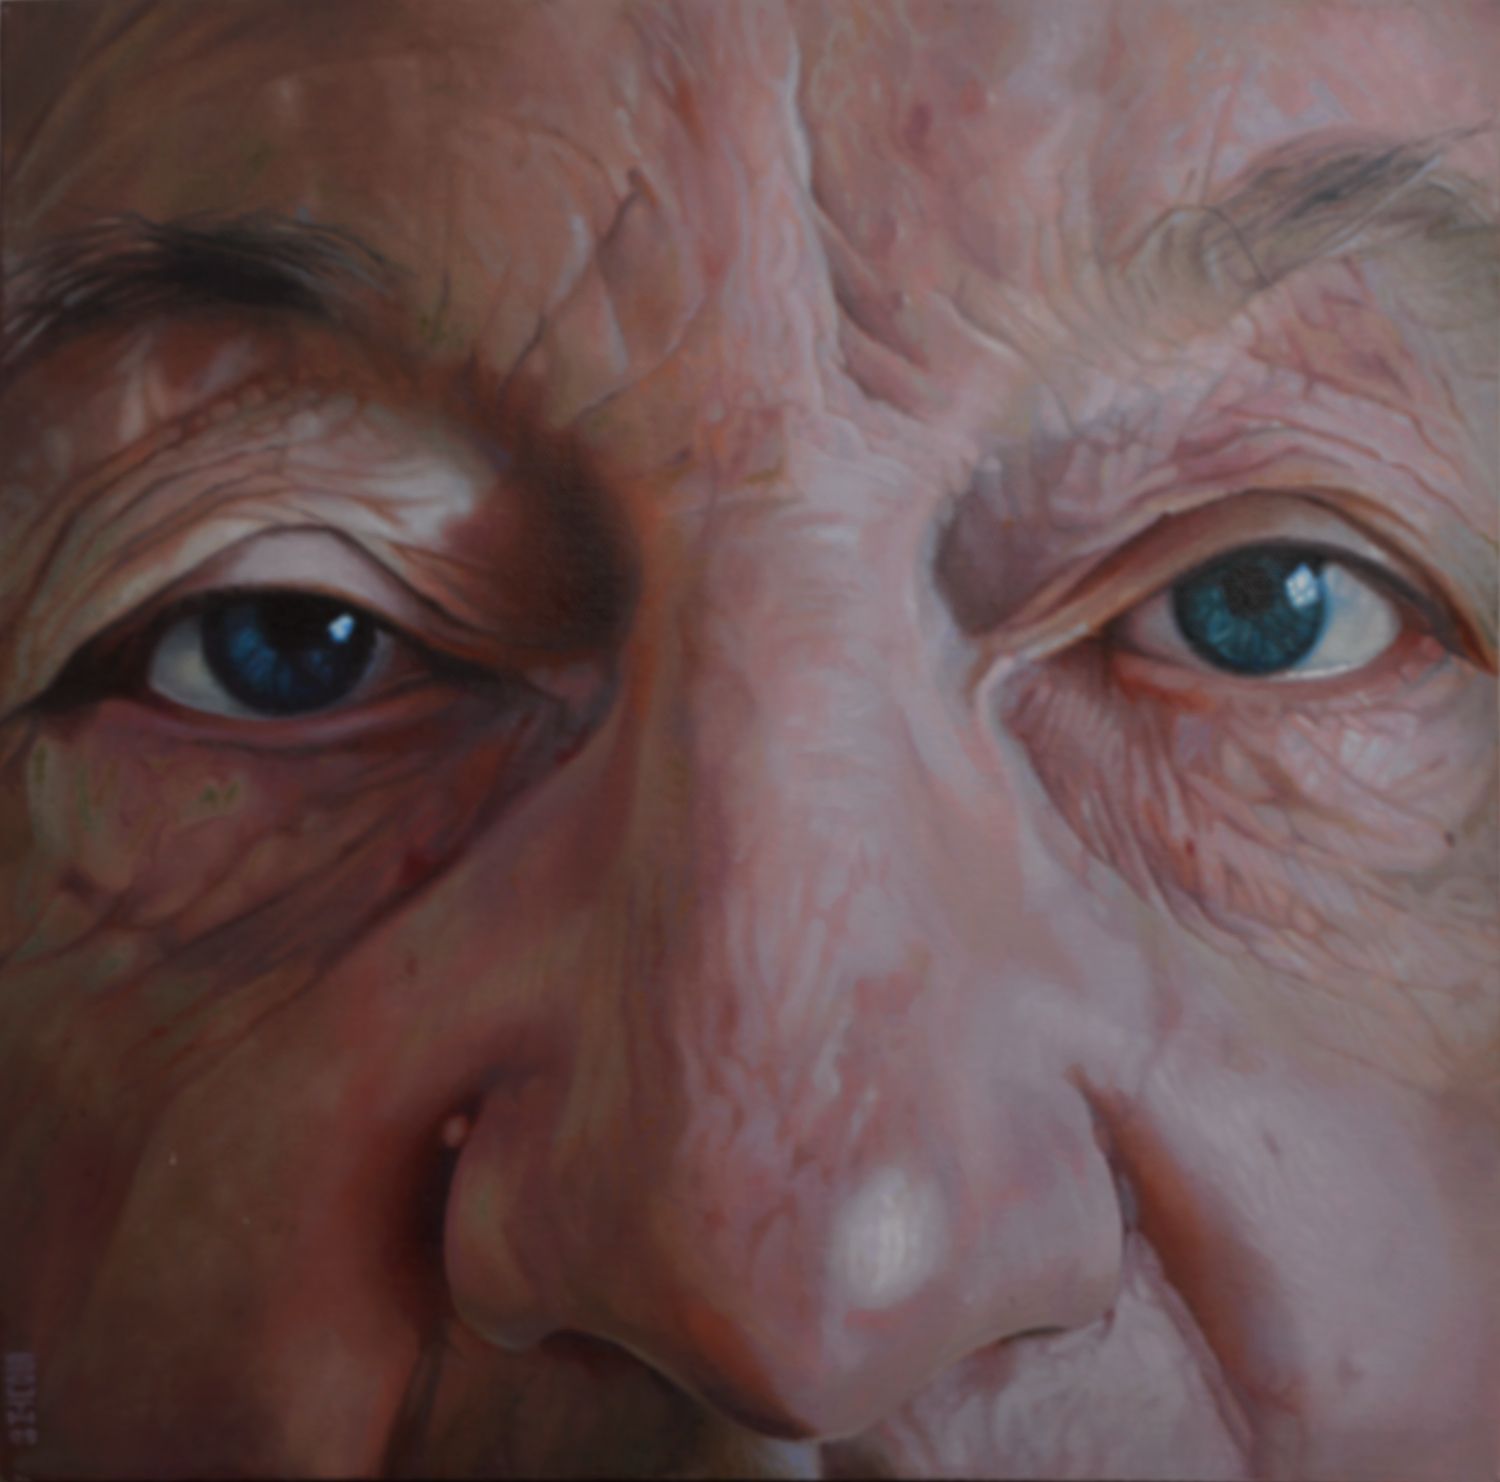 a close-up pf a man's face - Tony South - Dad